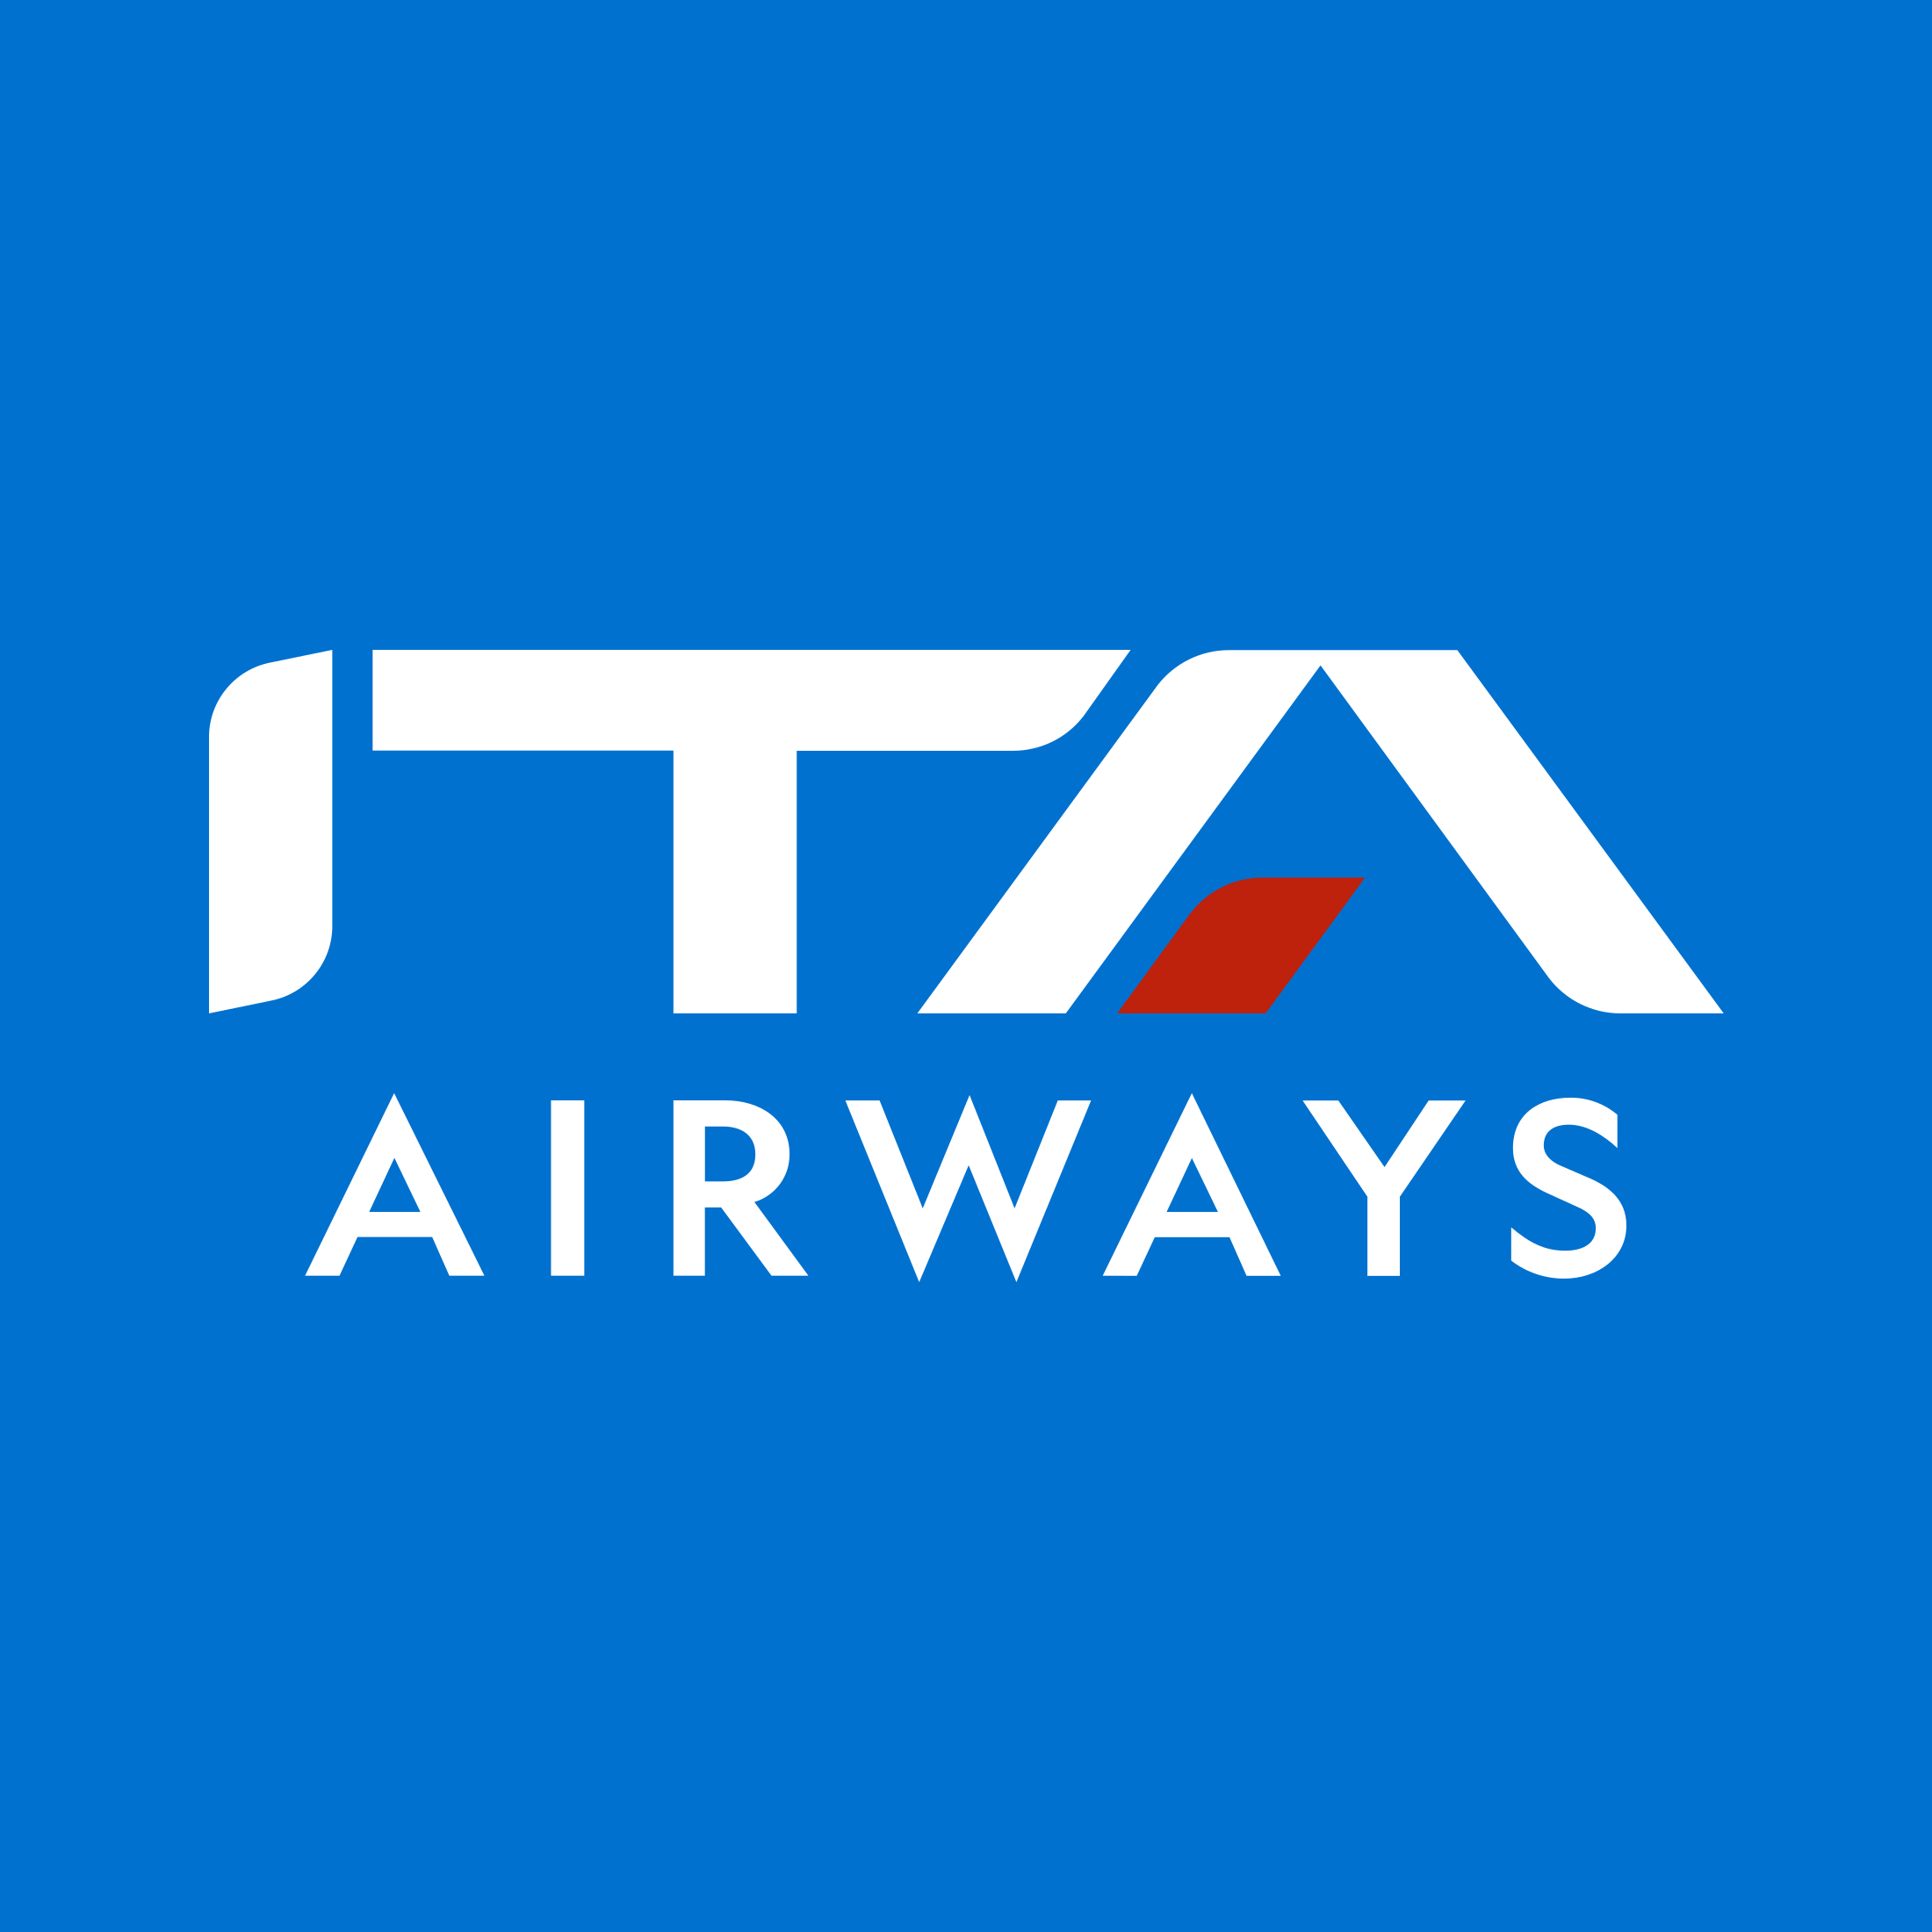 ITA Airways Coupons & Promo Codes